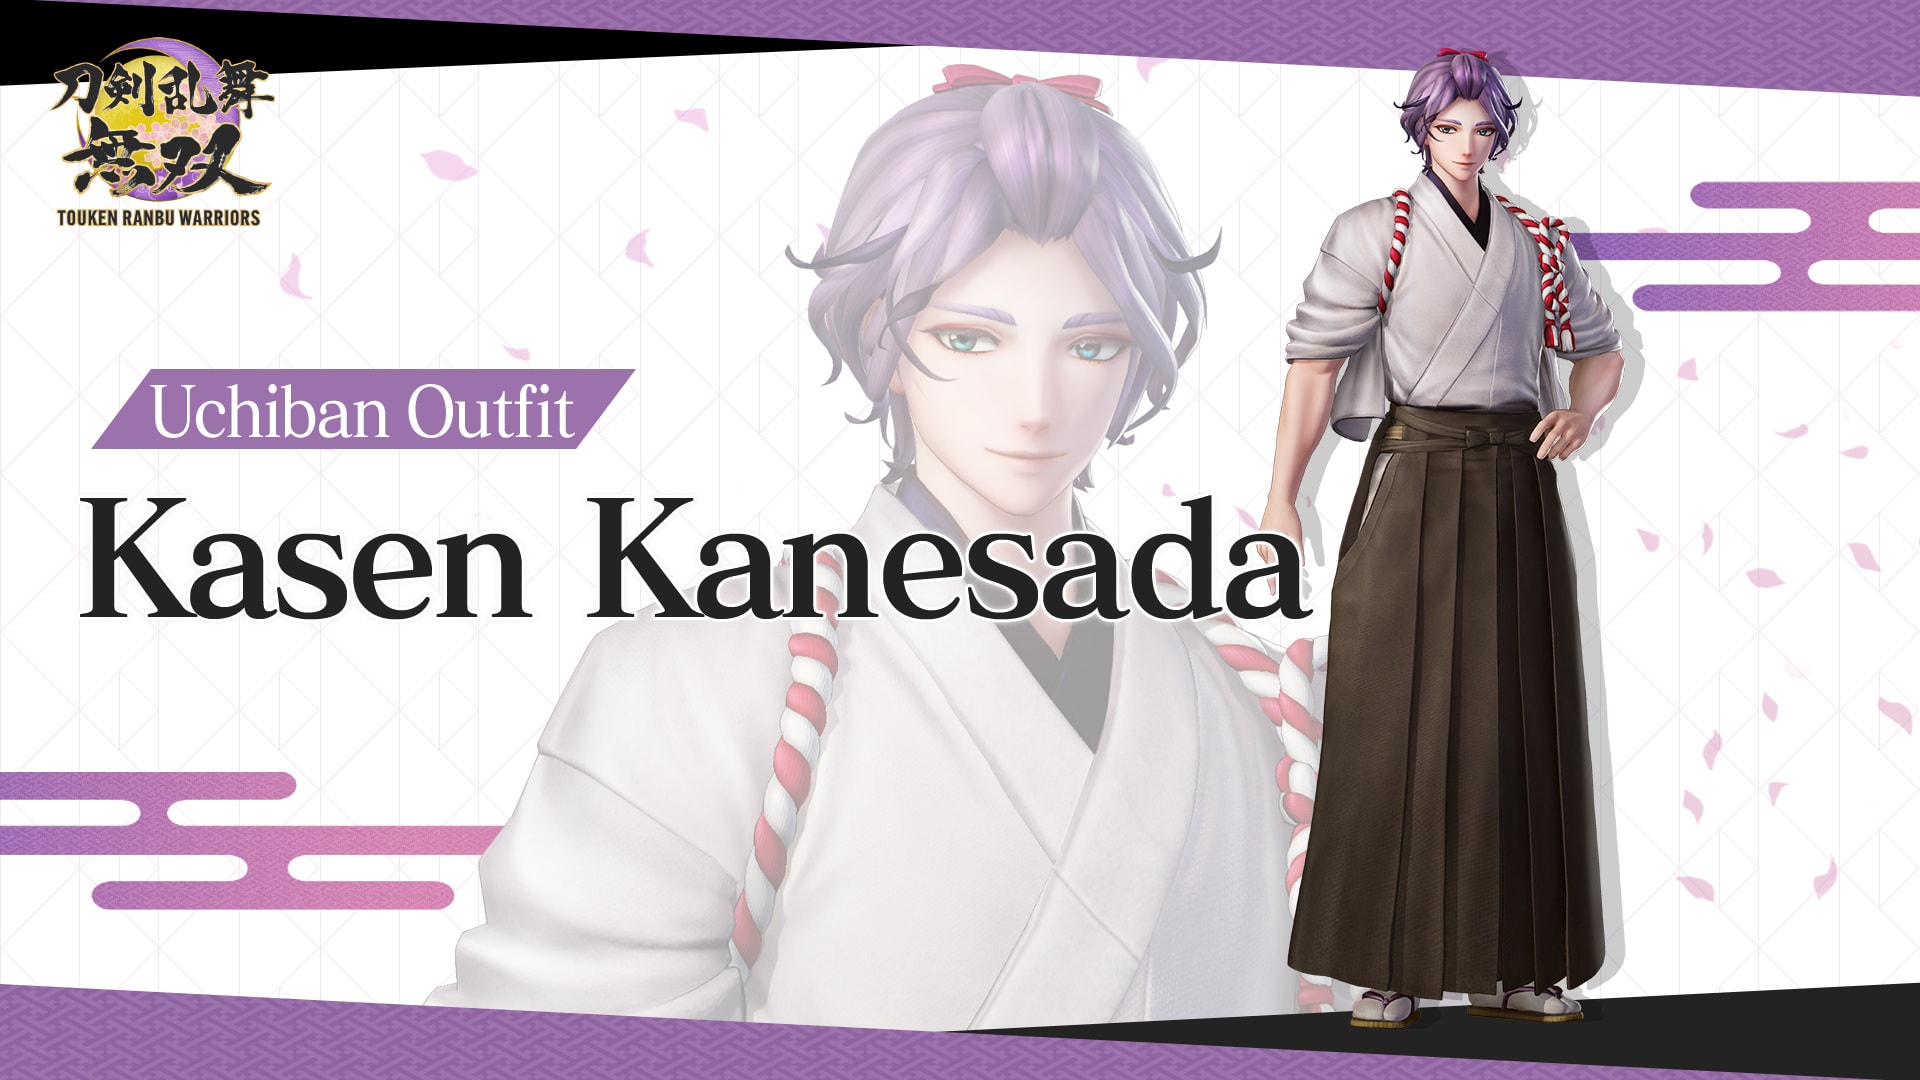 Uchiban Outfit "Kasen Kanesada"